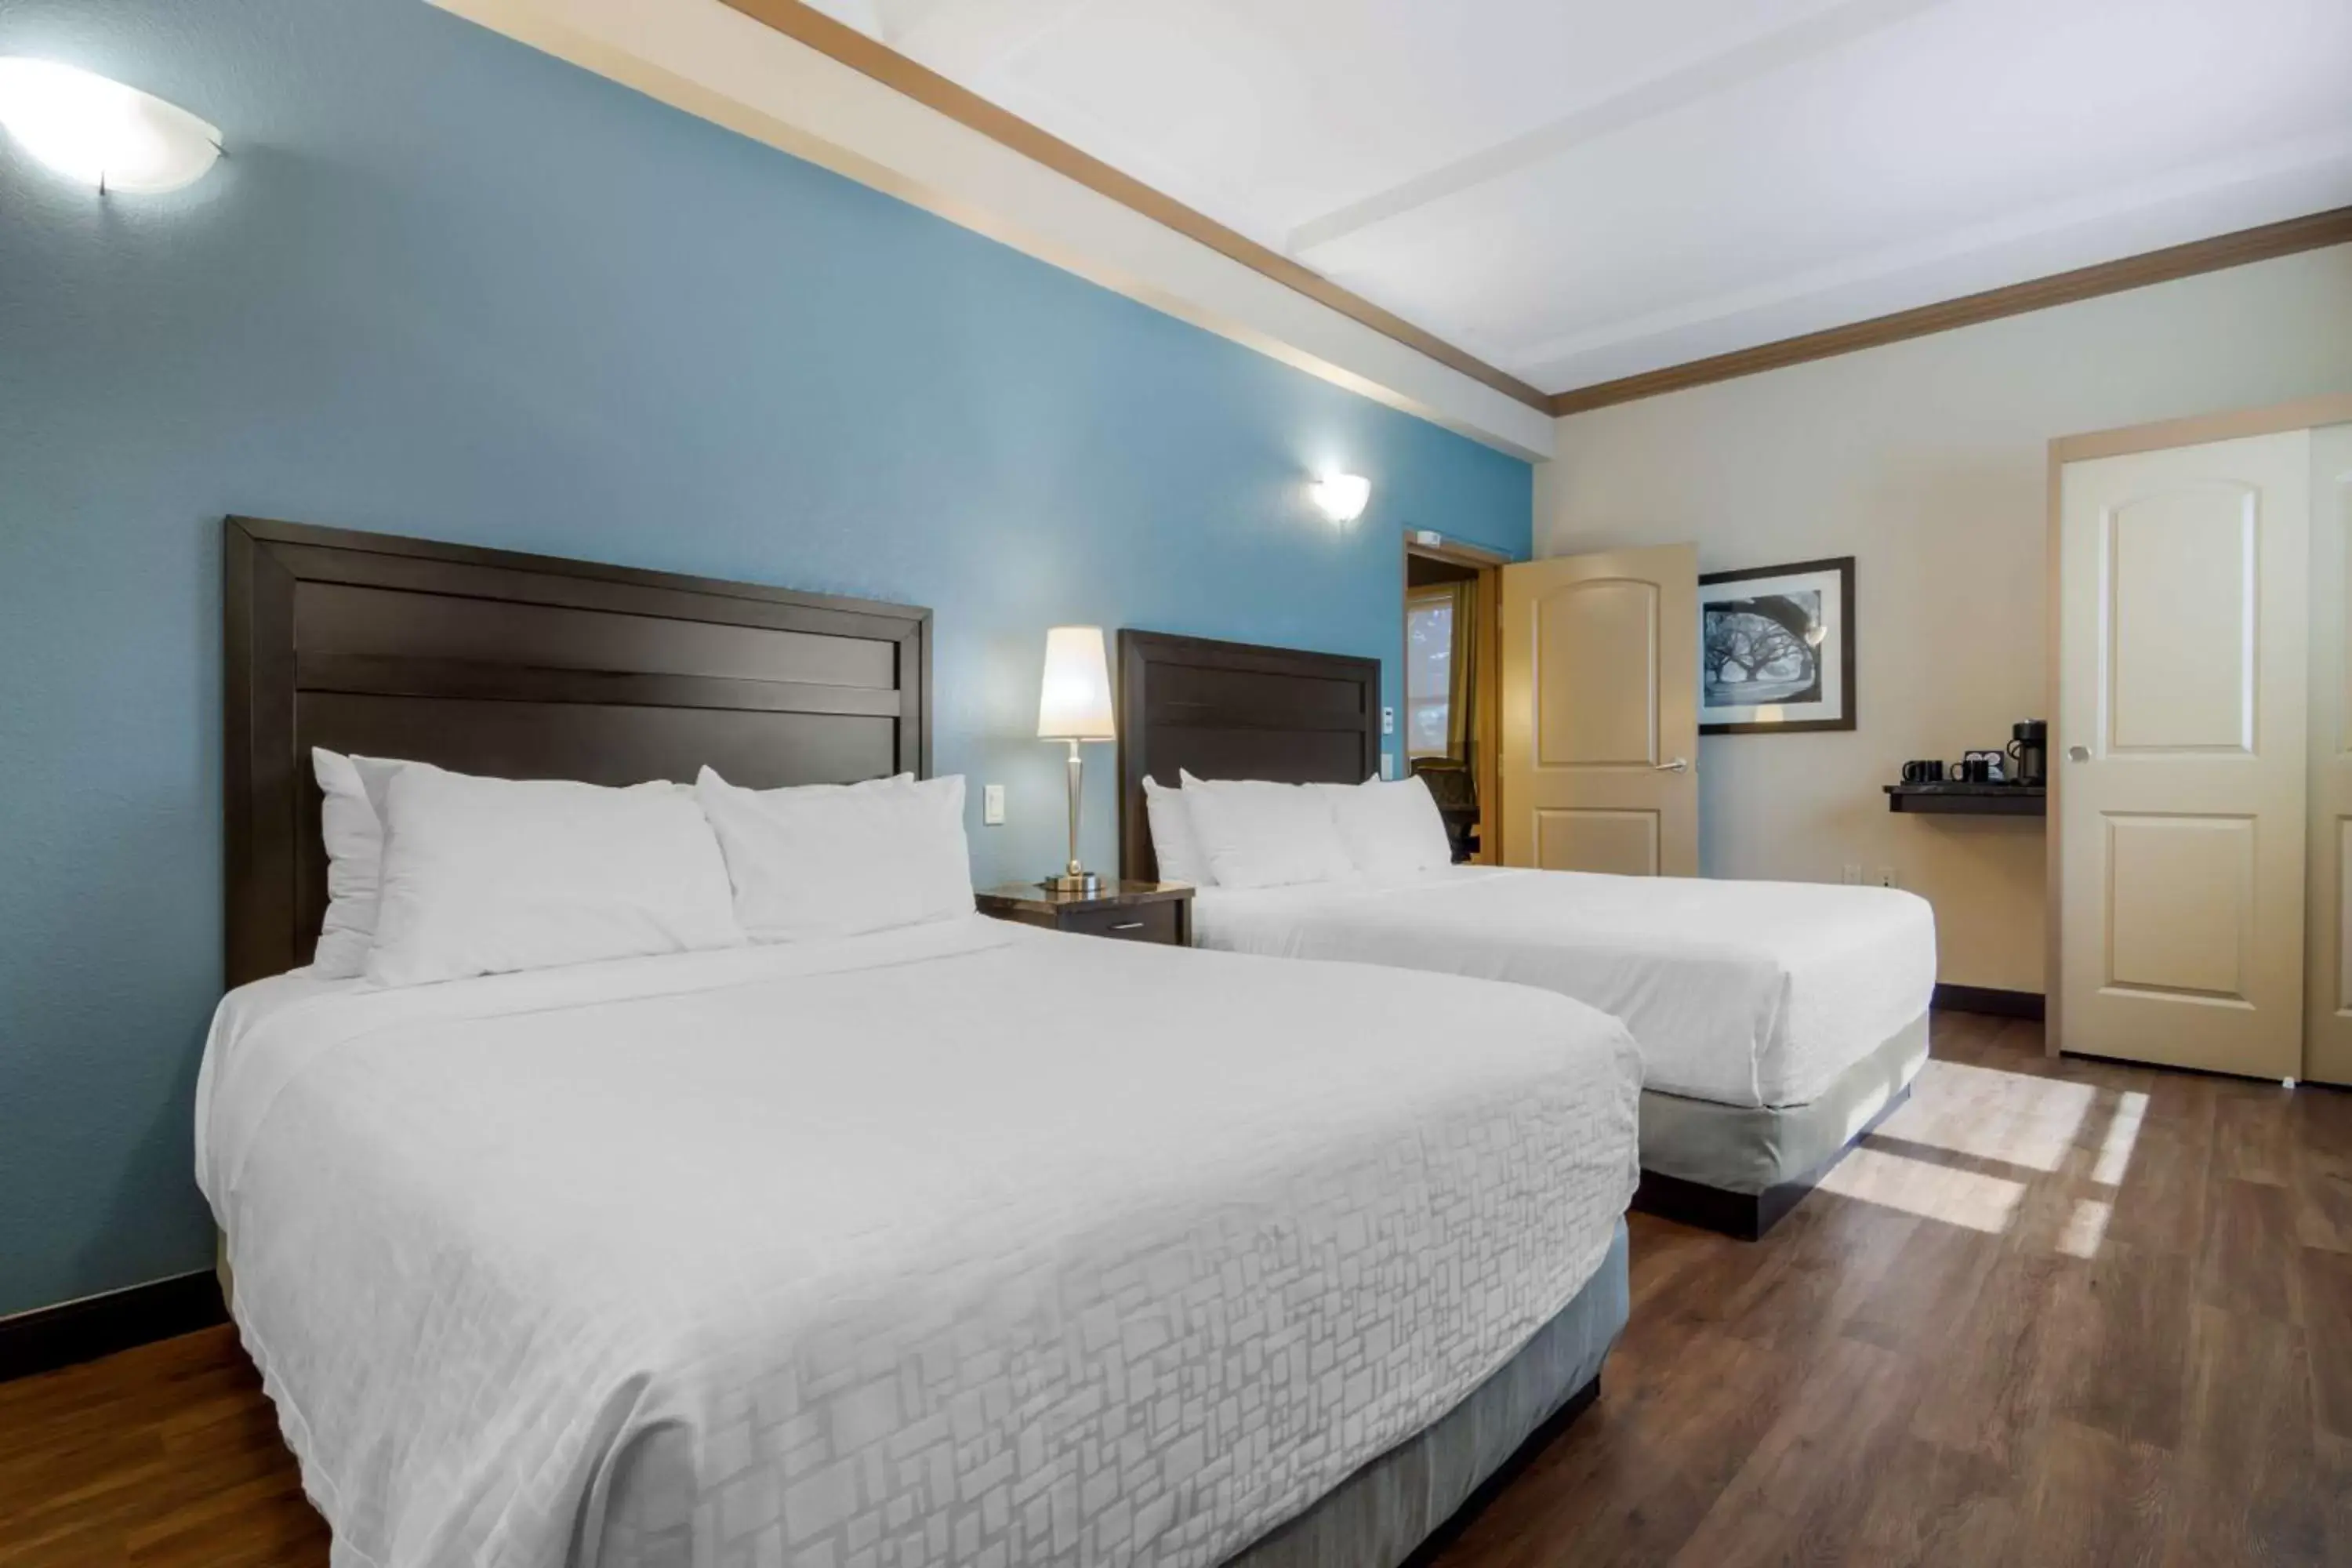 Bedroom, Bed in Best Western Plus Kamloops Hotel